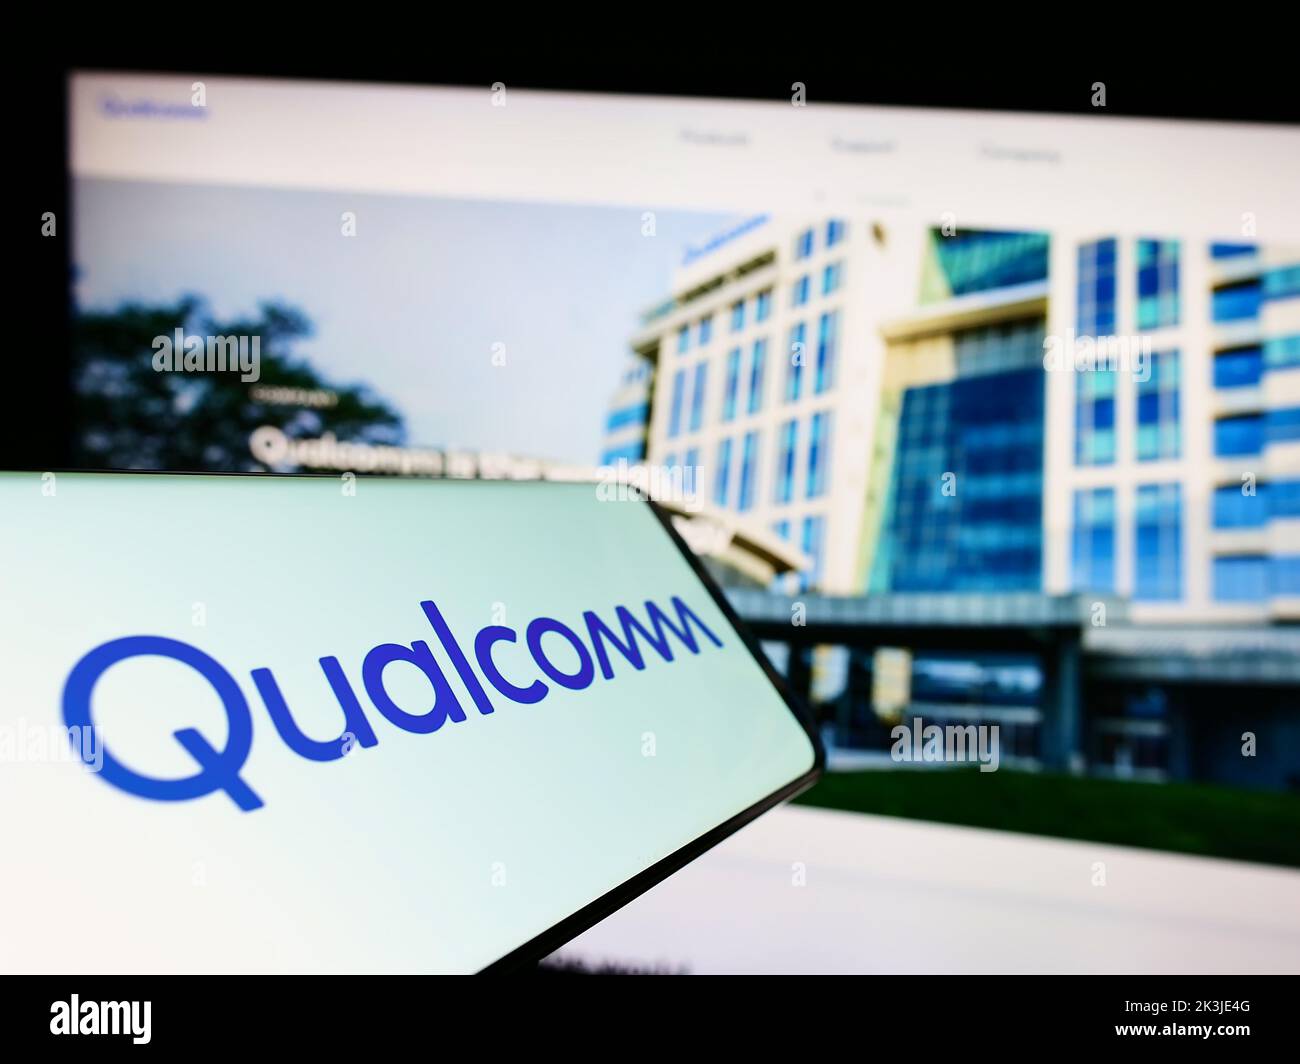 Smartphone avec le logo de la société américaine Qualcomm Incorporated, société de semi-conducteurs, à l'écran, devant le site Web. Concentrez-vous sur le centre de l'écran du téléphone. Banque D'Images